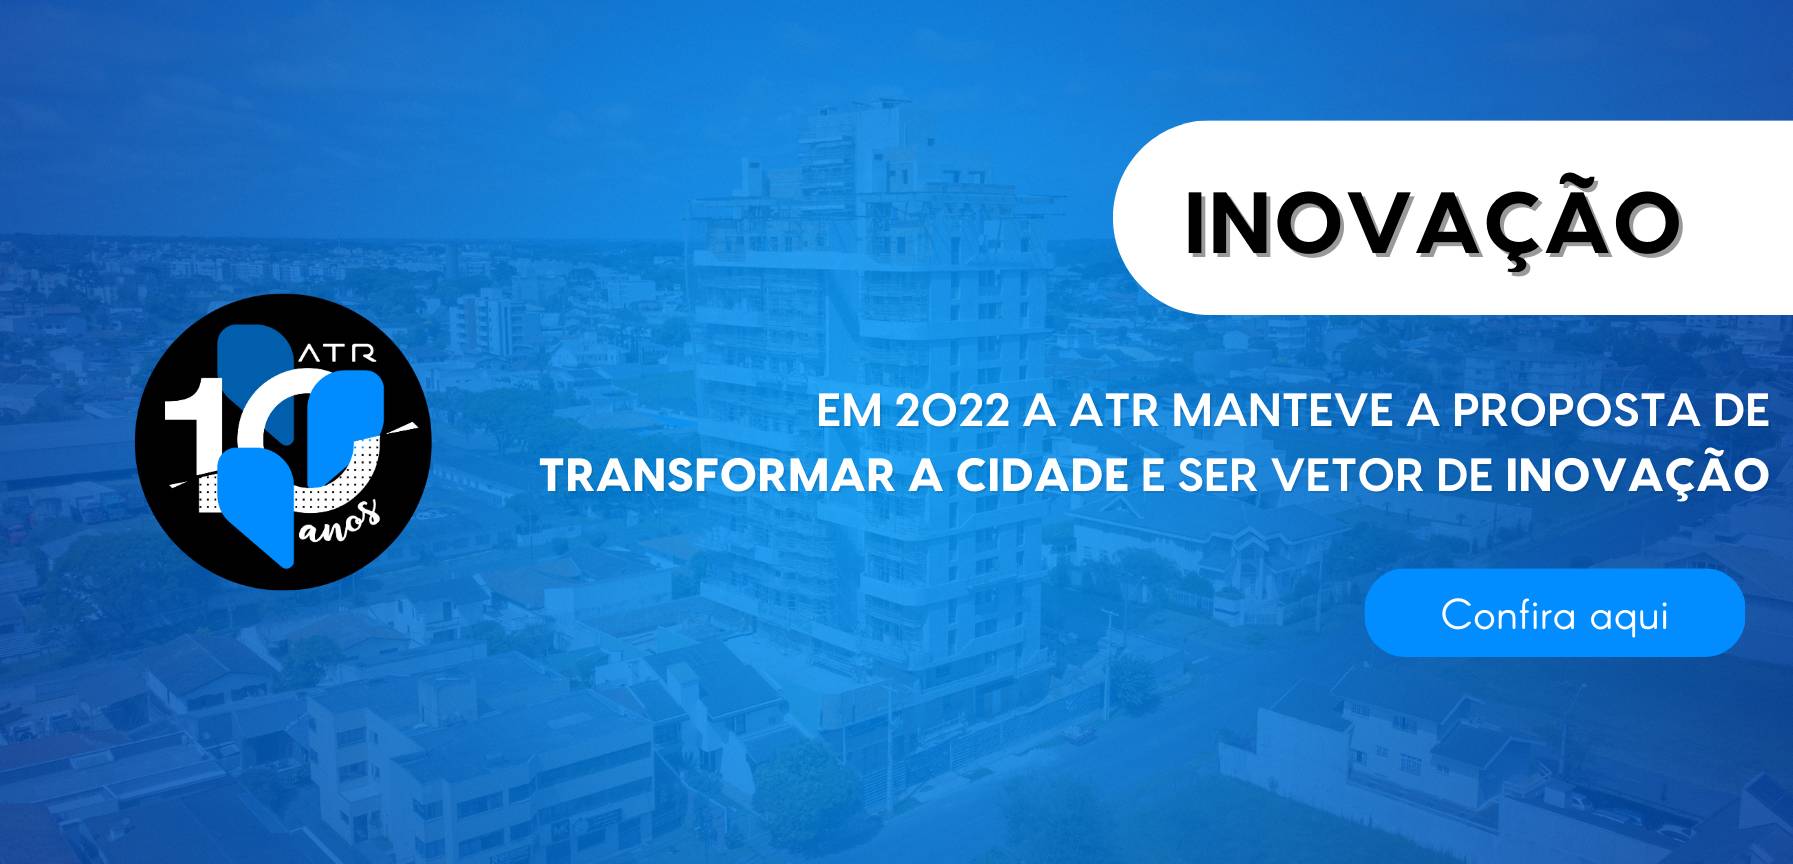 Em 2022, ATR Incorporadora manteve a proposta de transformar a cidade e ser vetor de inovação